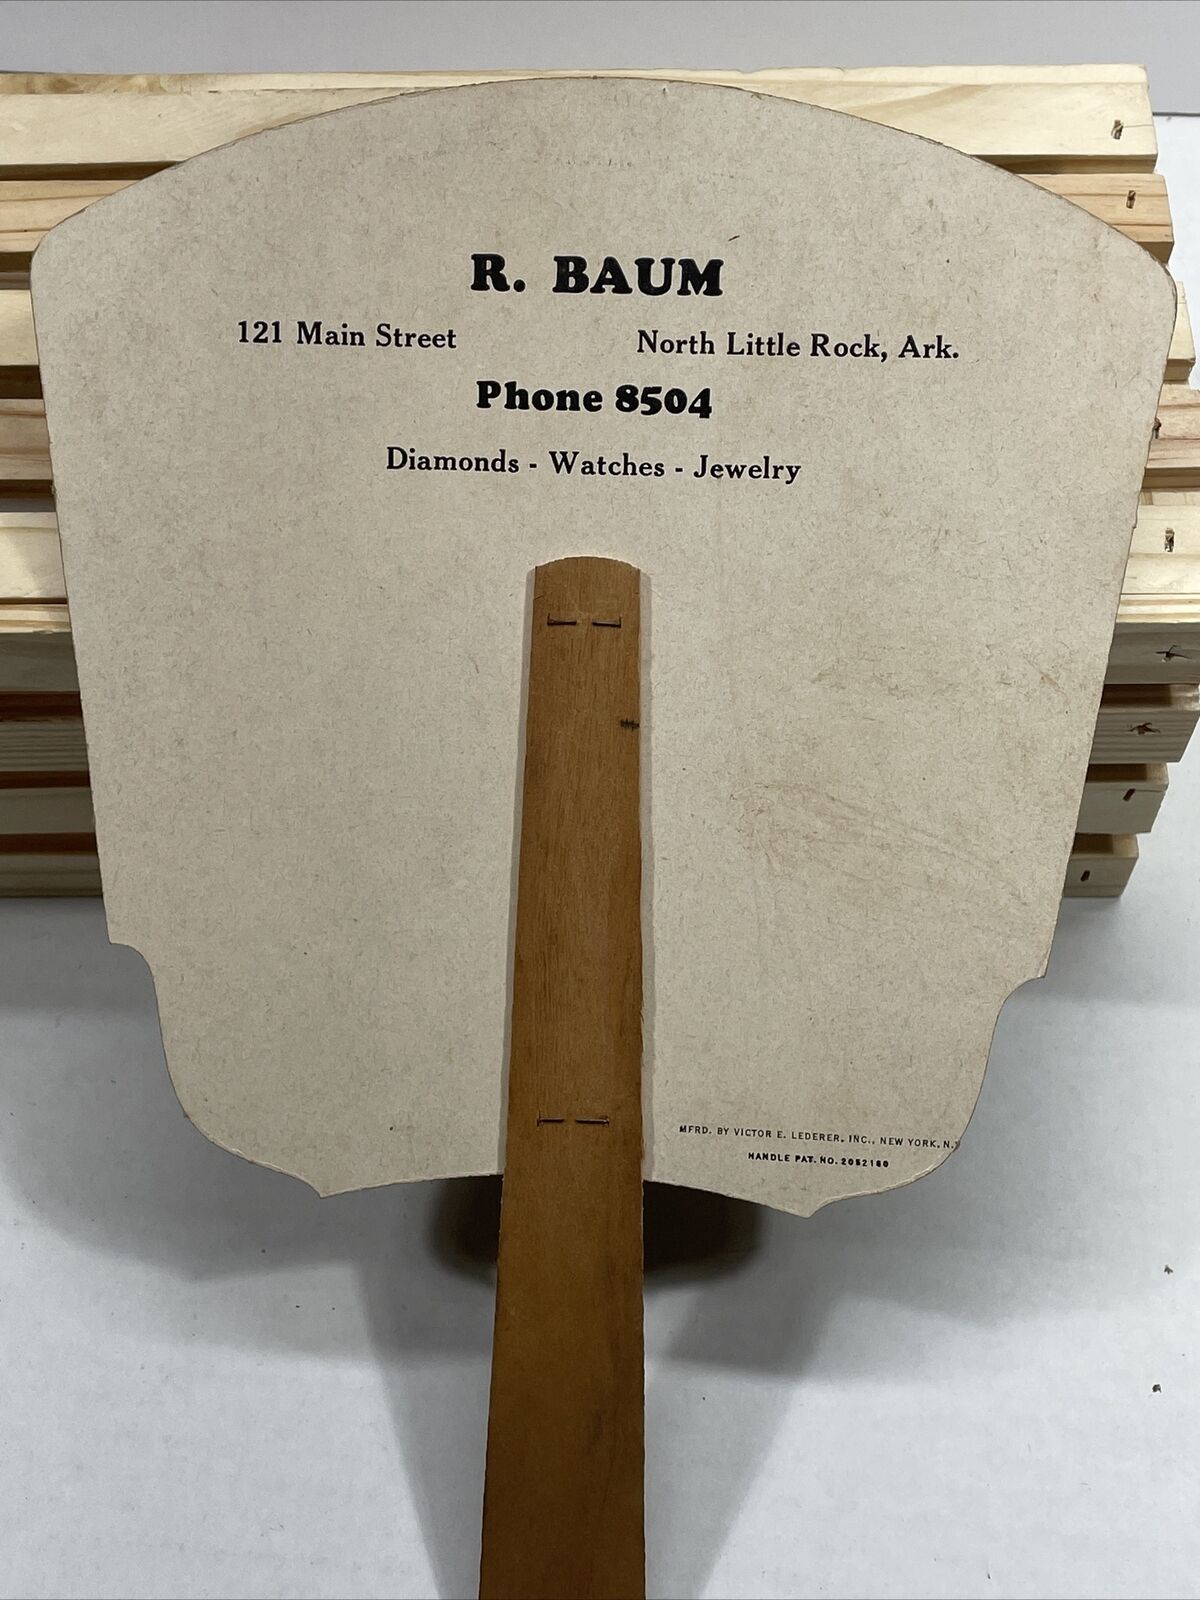 1940s-50s  Advertising Fan Cardboard R. Baum Jeweler North Little Rock Arkansas